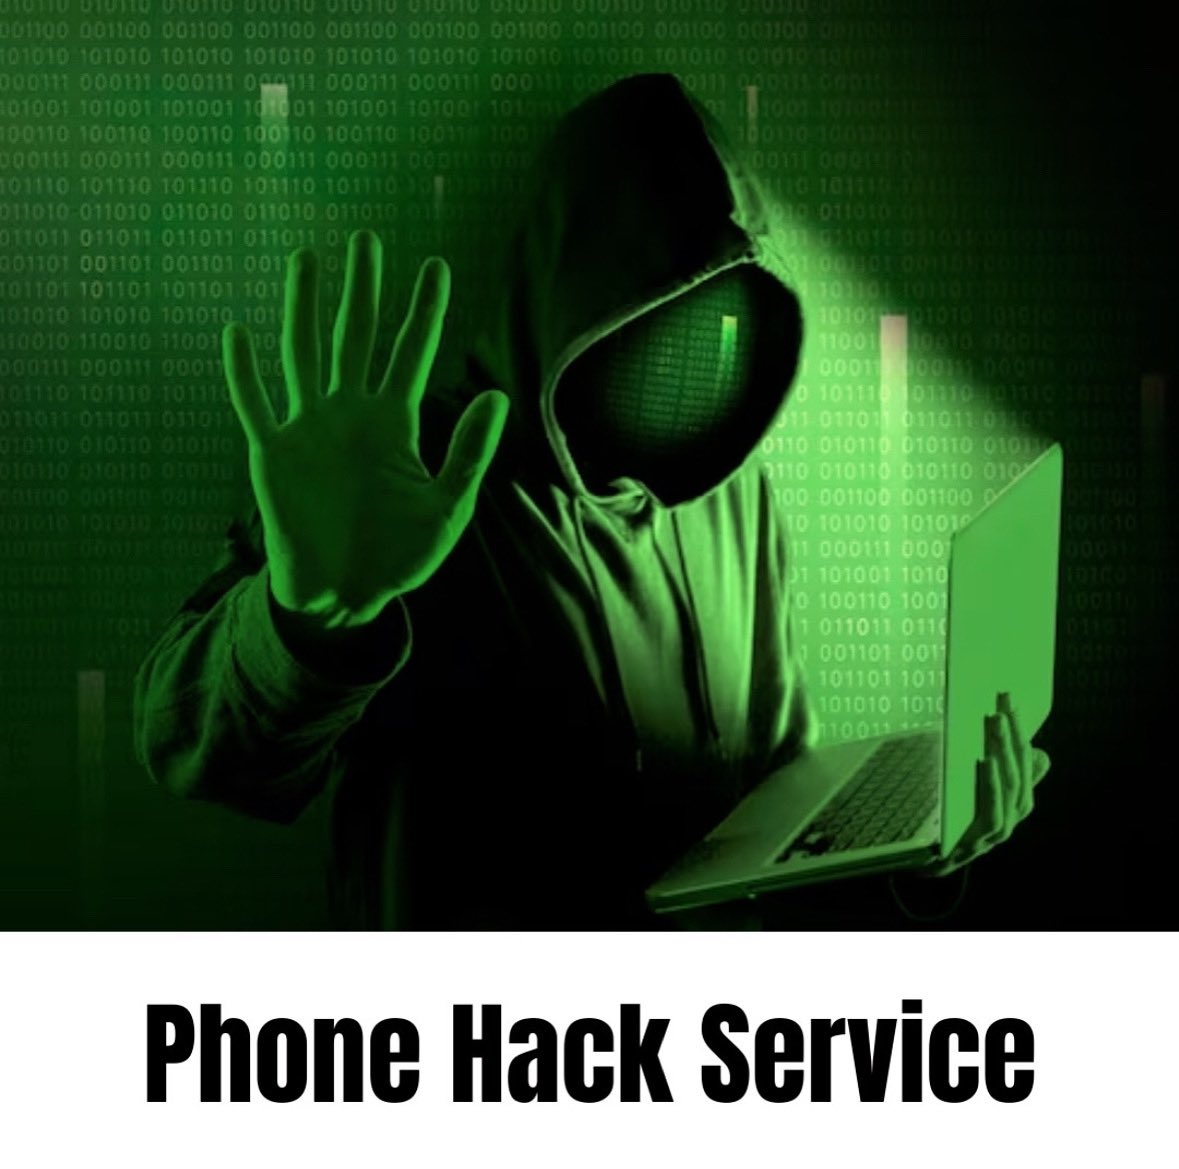 🏴‍☠️Hacemos piratería ética con buenos fines y recuperación de cuentas de redes sociales. Puedes aprender a hackear con nosotros Envíanos un mensaje privado si tienes preguntas relacionadas con la piratería Tags:-#hackers #hacking #hacker #ethicalhacking #hack #canada #usa